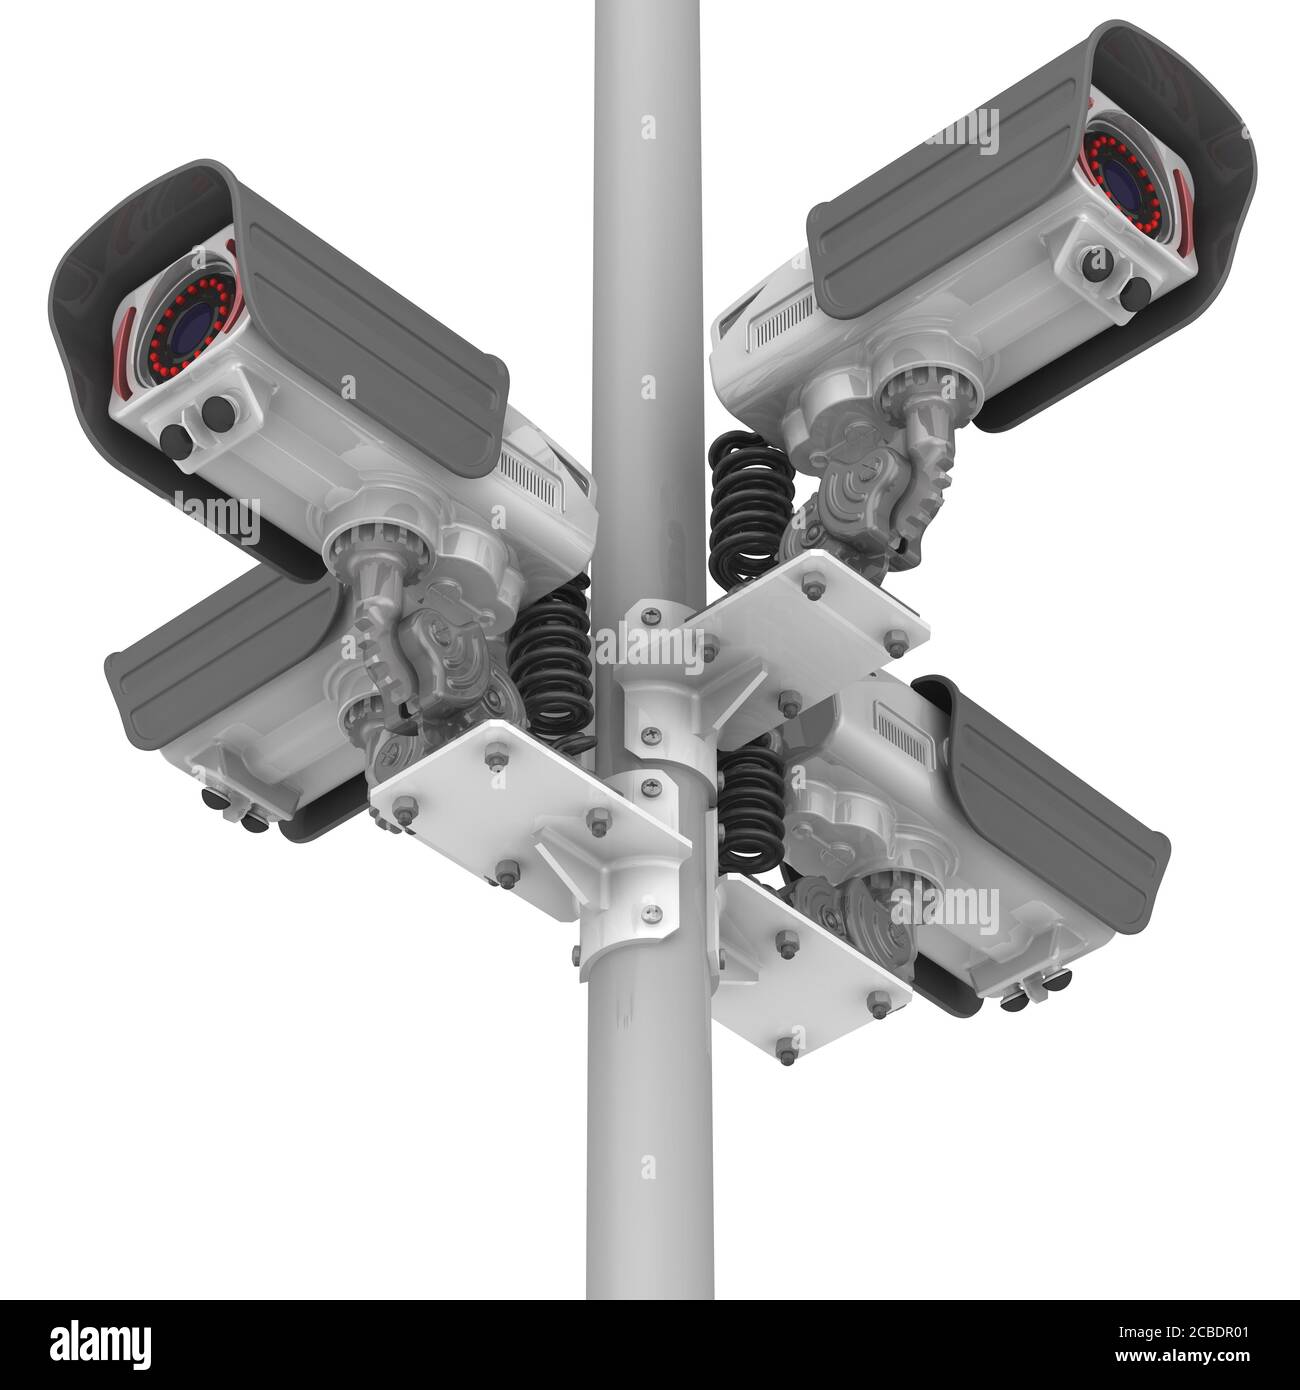 Caméras CCTV sur le montant. Quatre caméras de sécurité modernes montées sur un montant. Illustration 3D. Isolé Banque D'Images